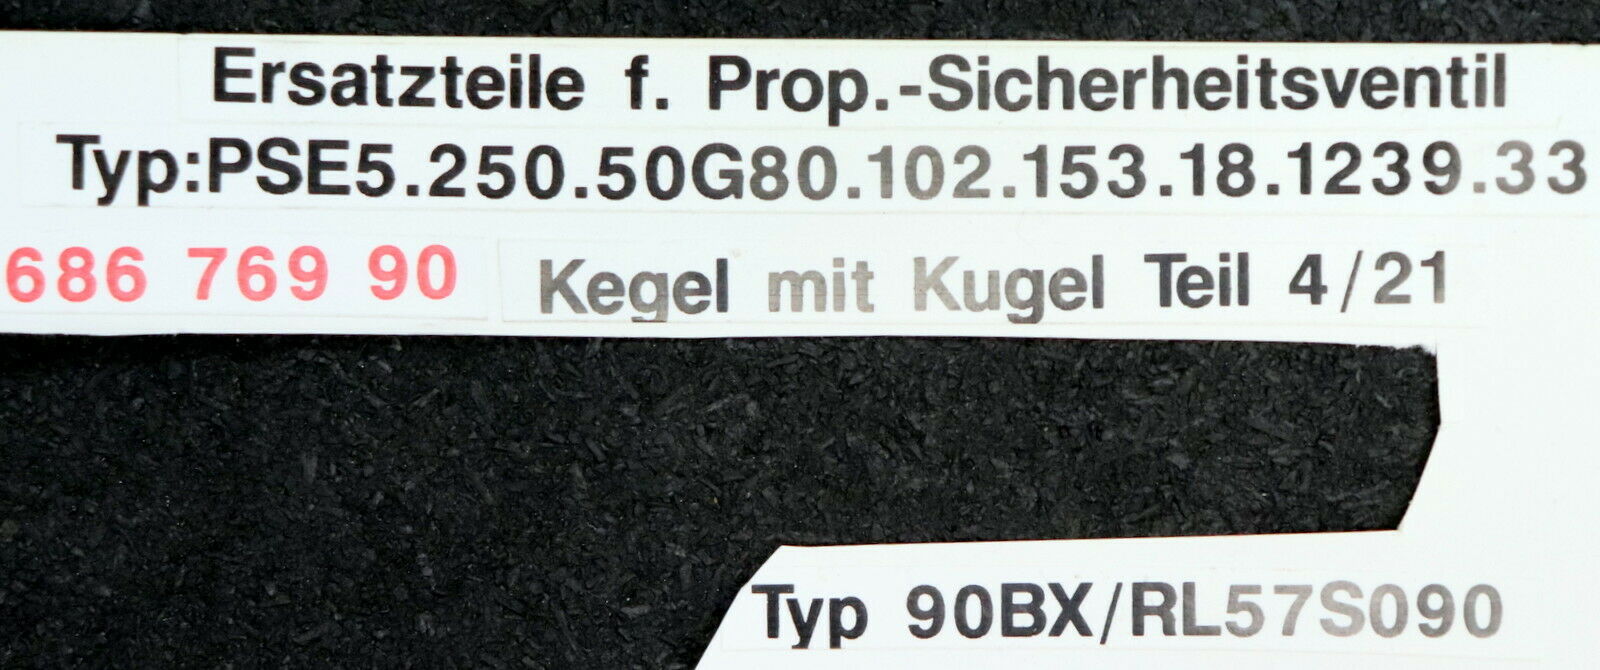 SEMPELL Kegel mit Kugel Teil 4/21 für Prop.-Sicherheitsventil Typ: PSE 5.250.50